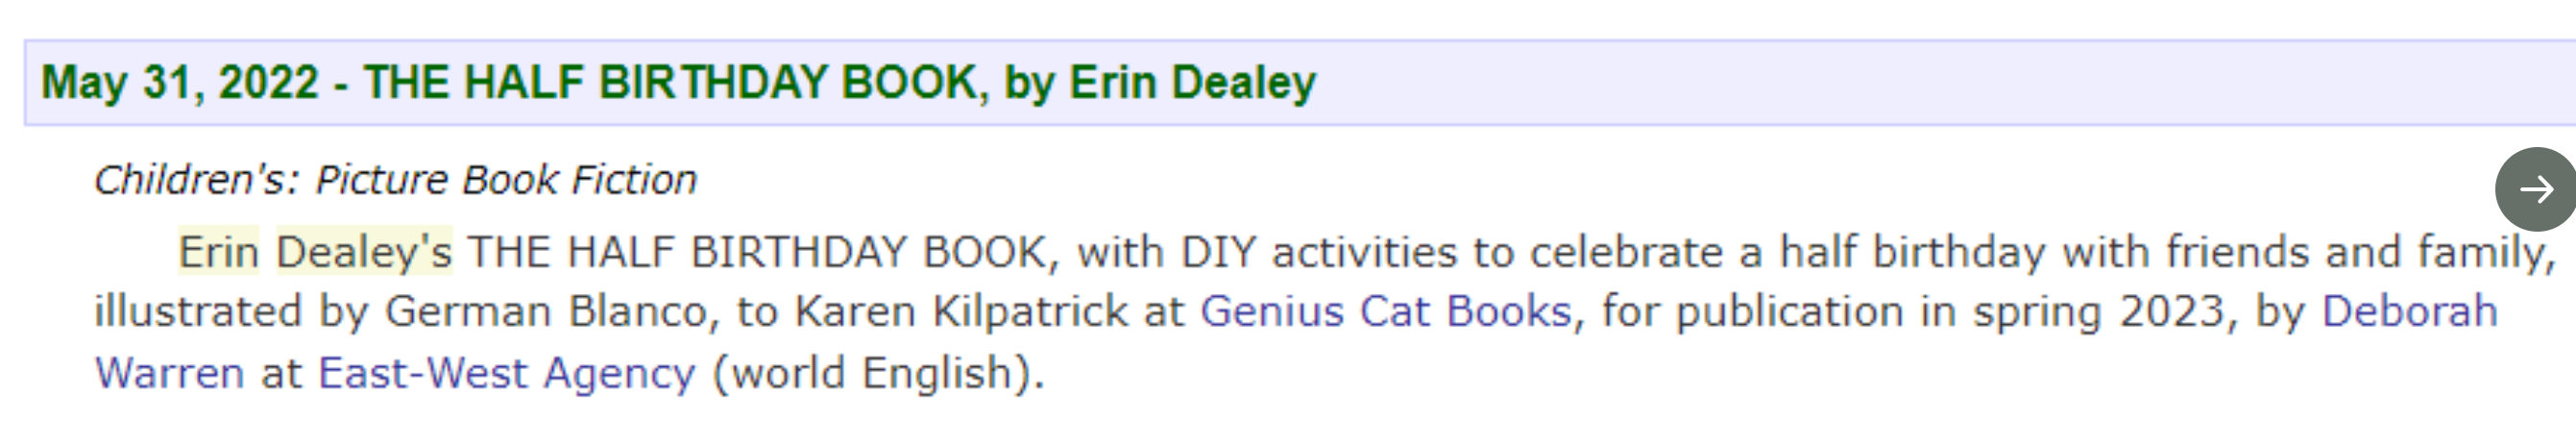 Erin Dealey Book Announcement